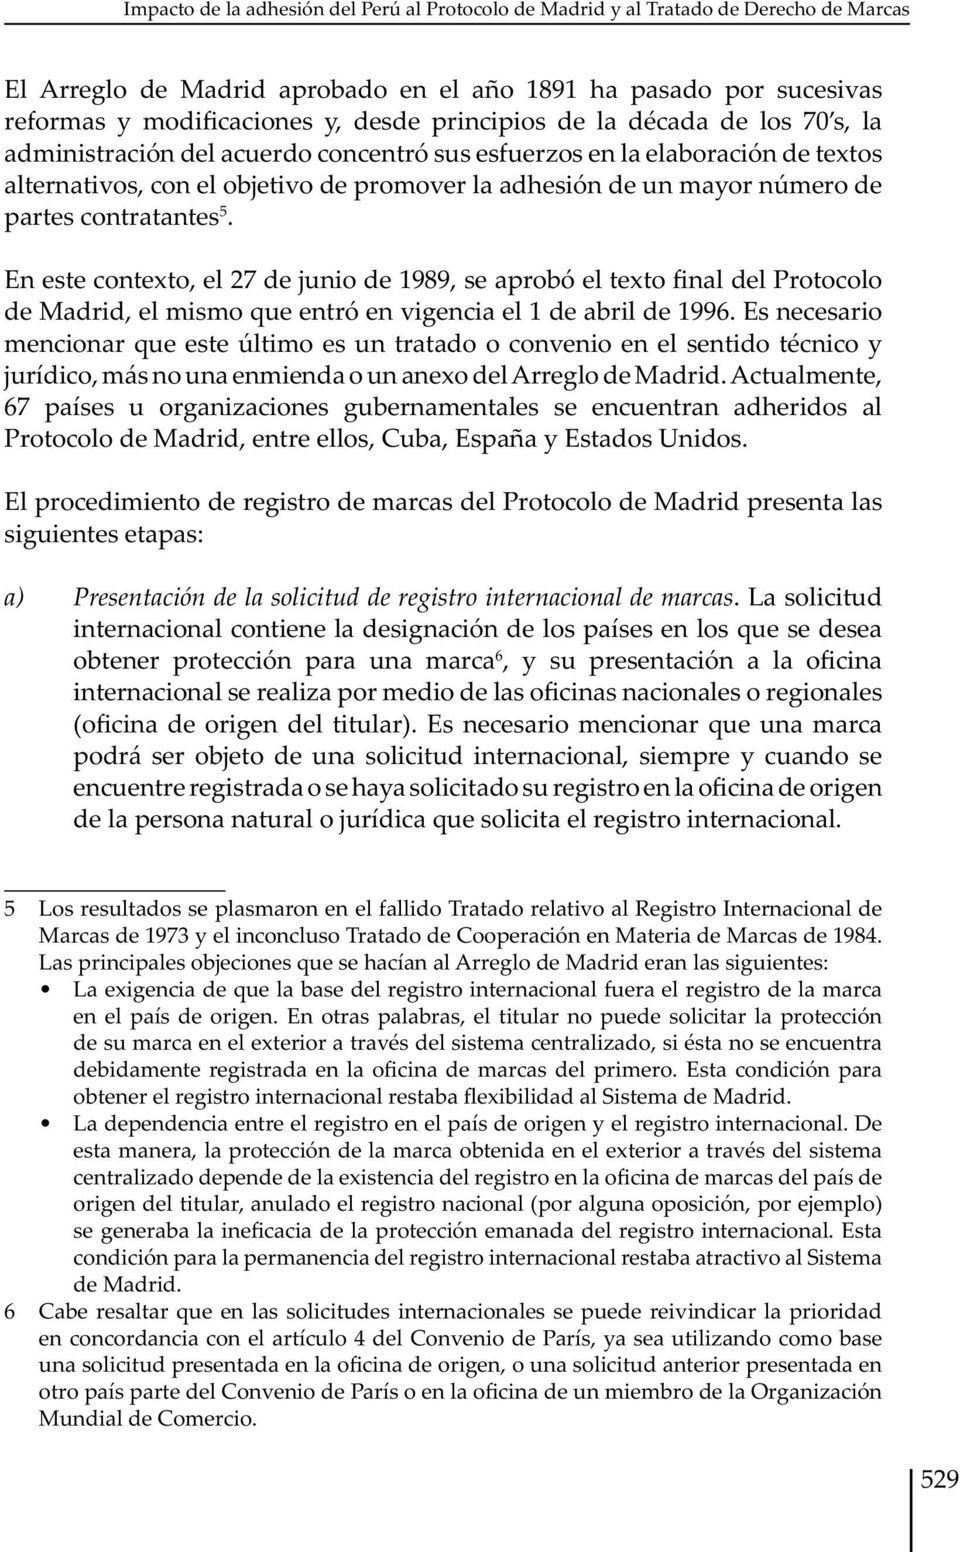 partes contratantes 5. En este contexto, el 27 de junio de 1989, se aprobó el texto final del Protocolo de Madrid, el mismo que entró en vigencia el 1 de abril de 1996.